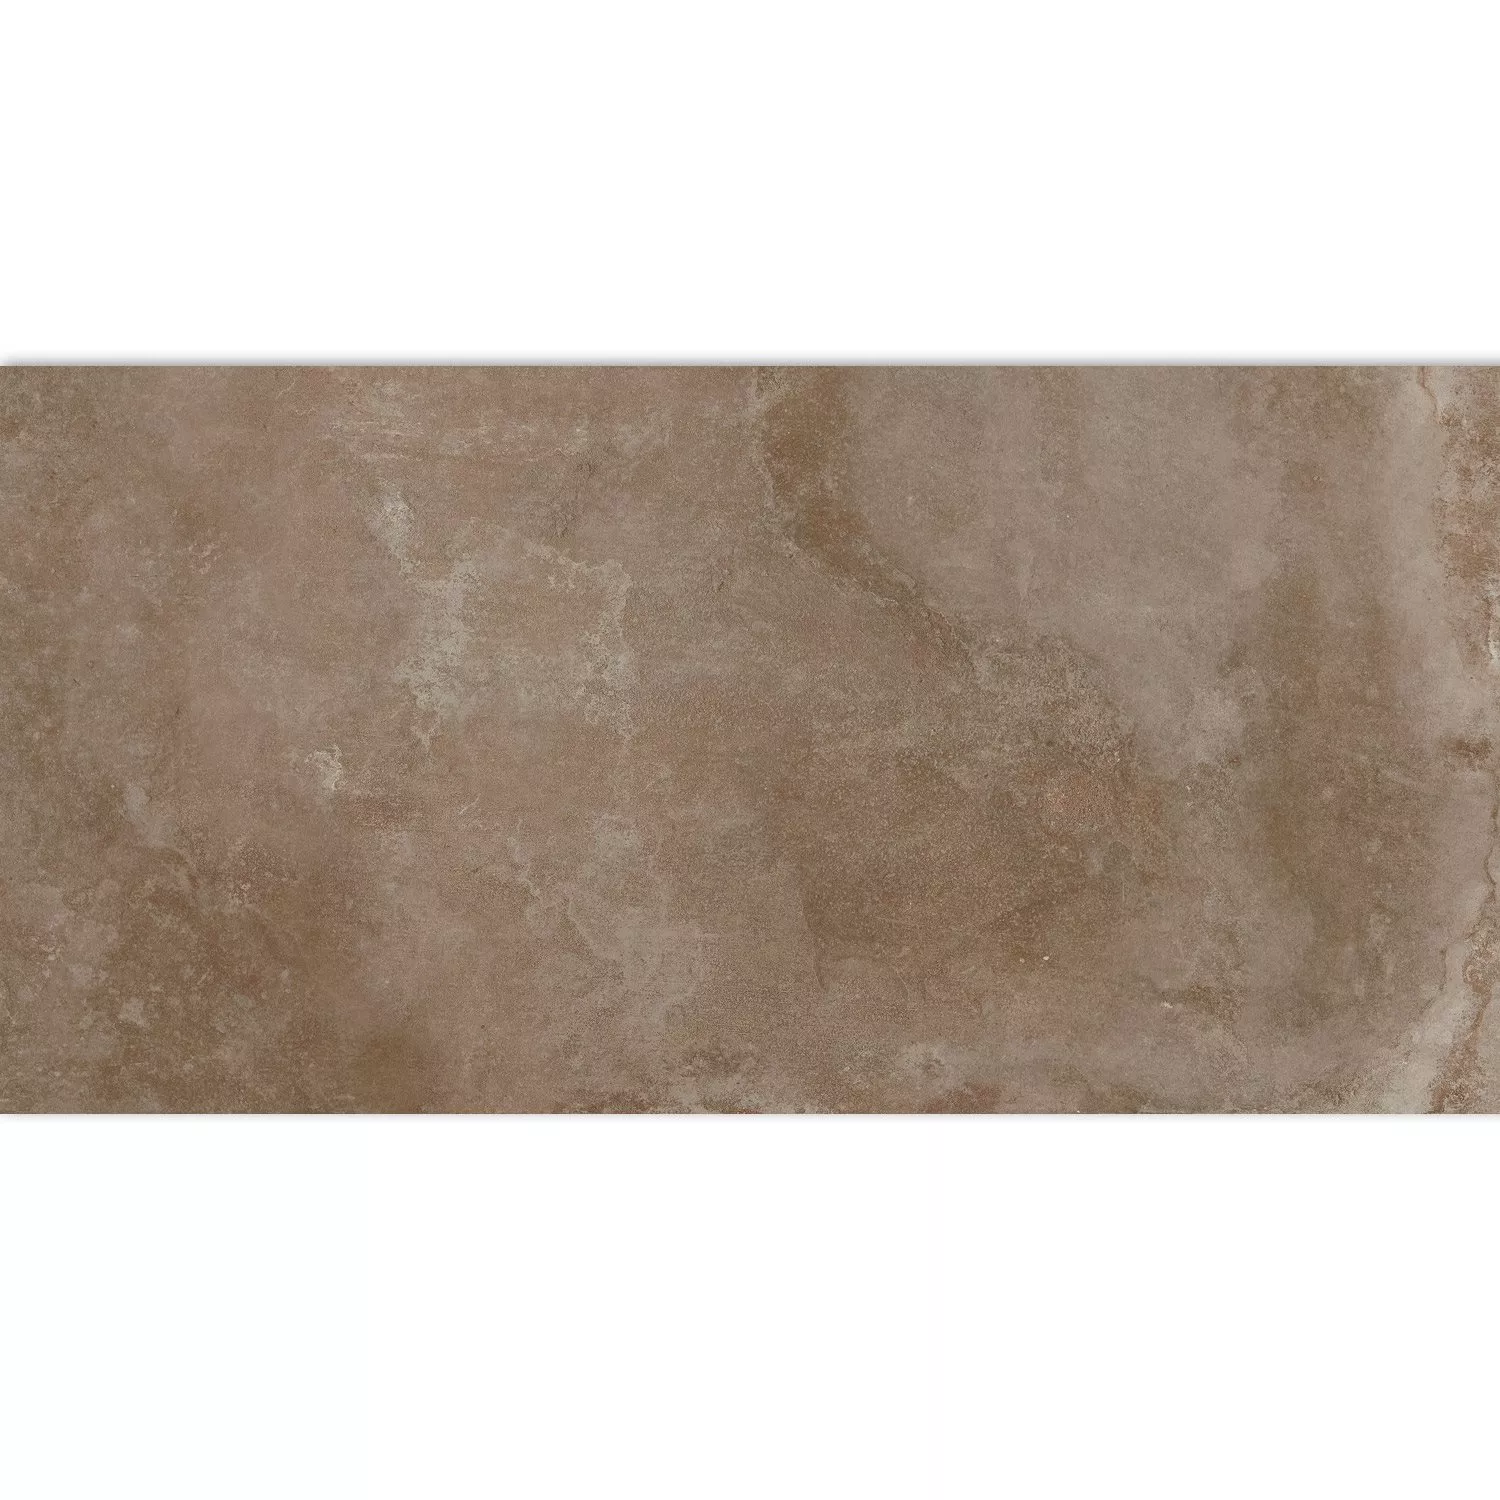 Floor Tiles Cement Optic Maryland Brown 30x60cm